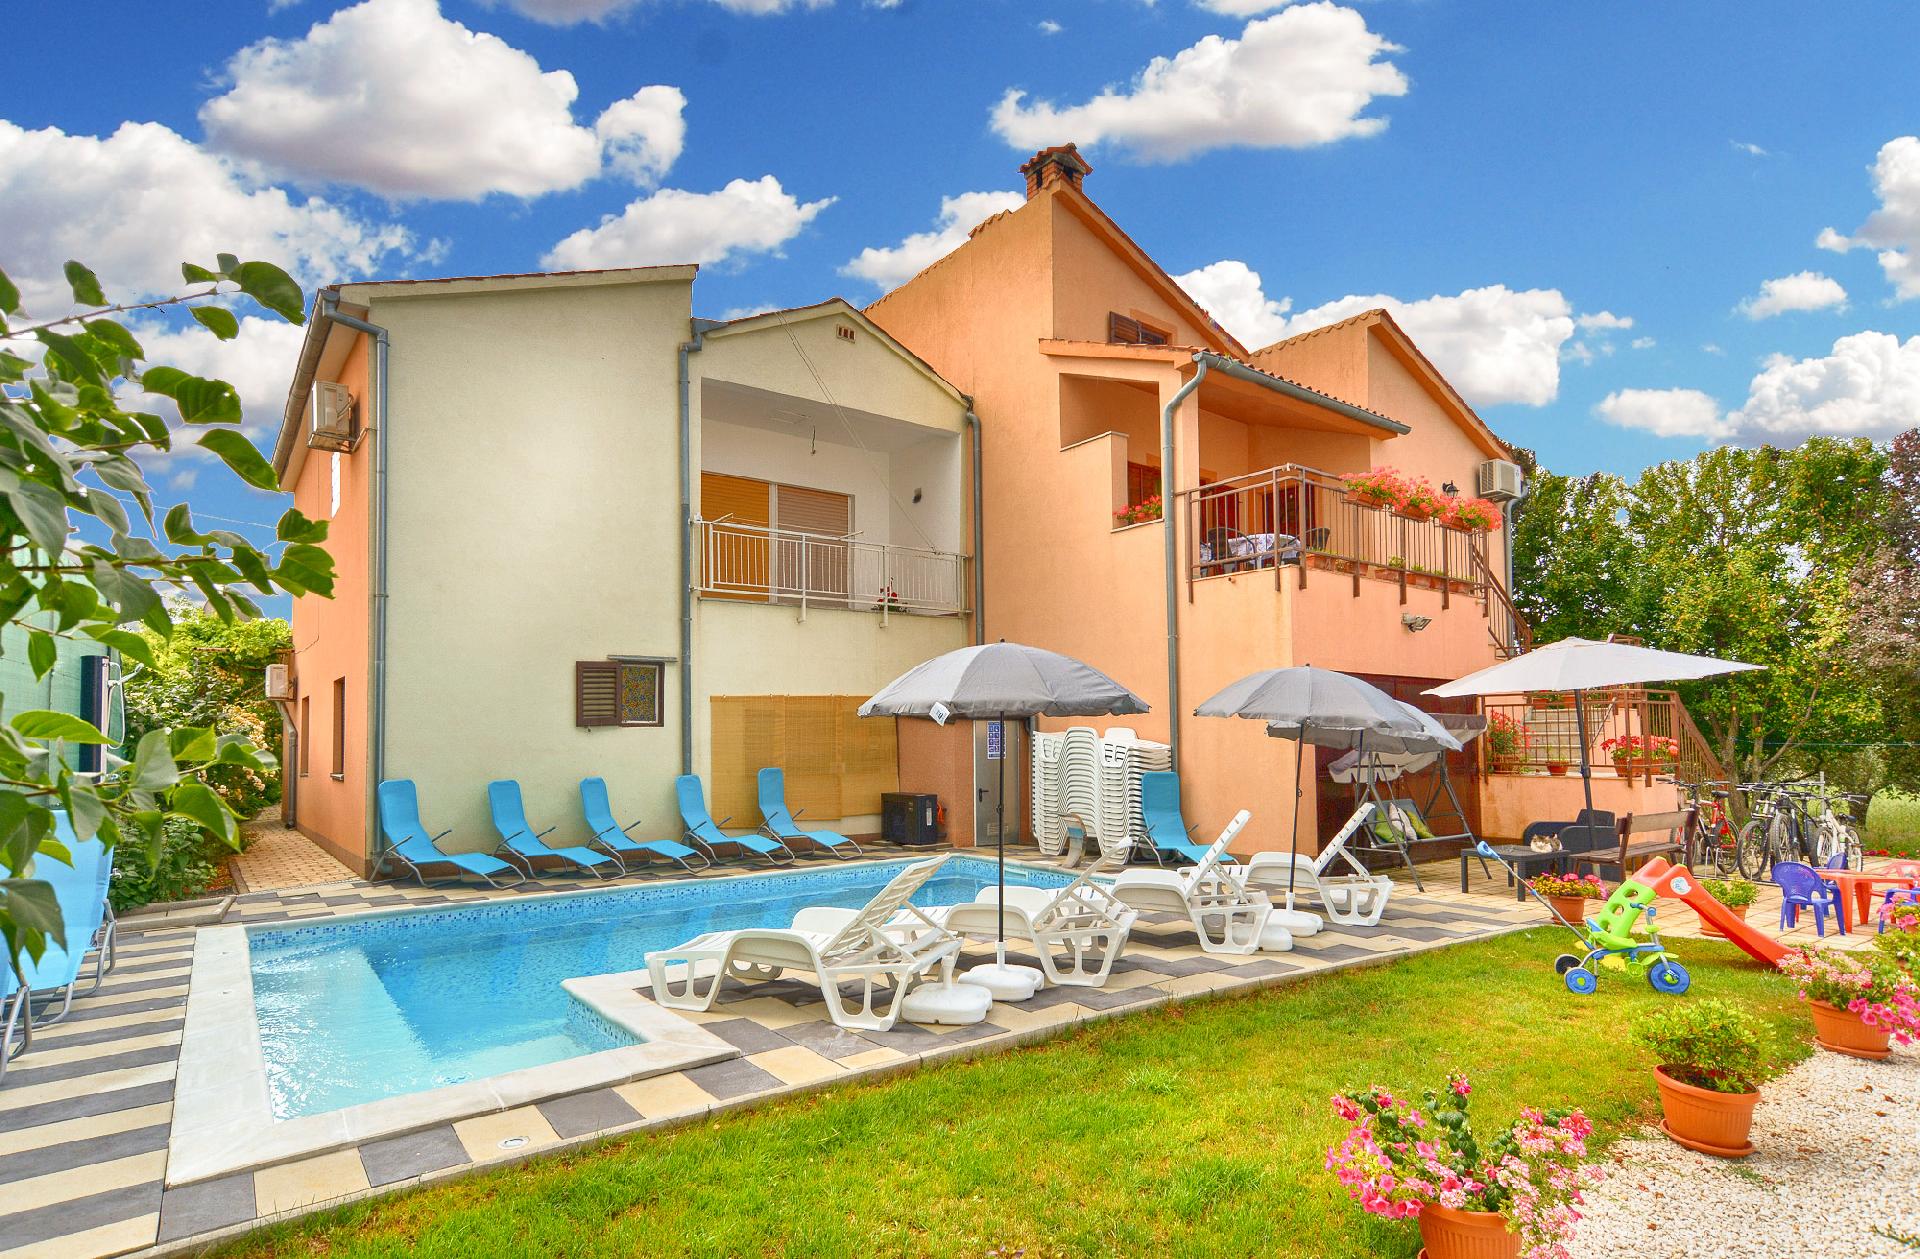 Ferienwohnung für 8 Personen ca. 75 m² i  in Istrien